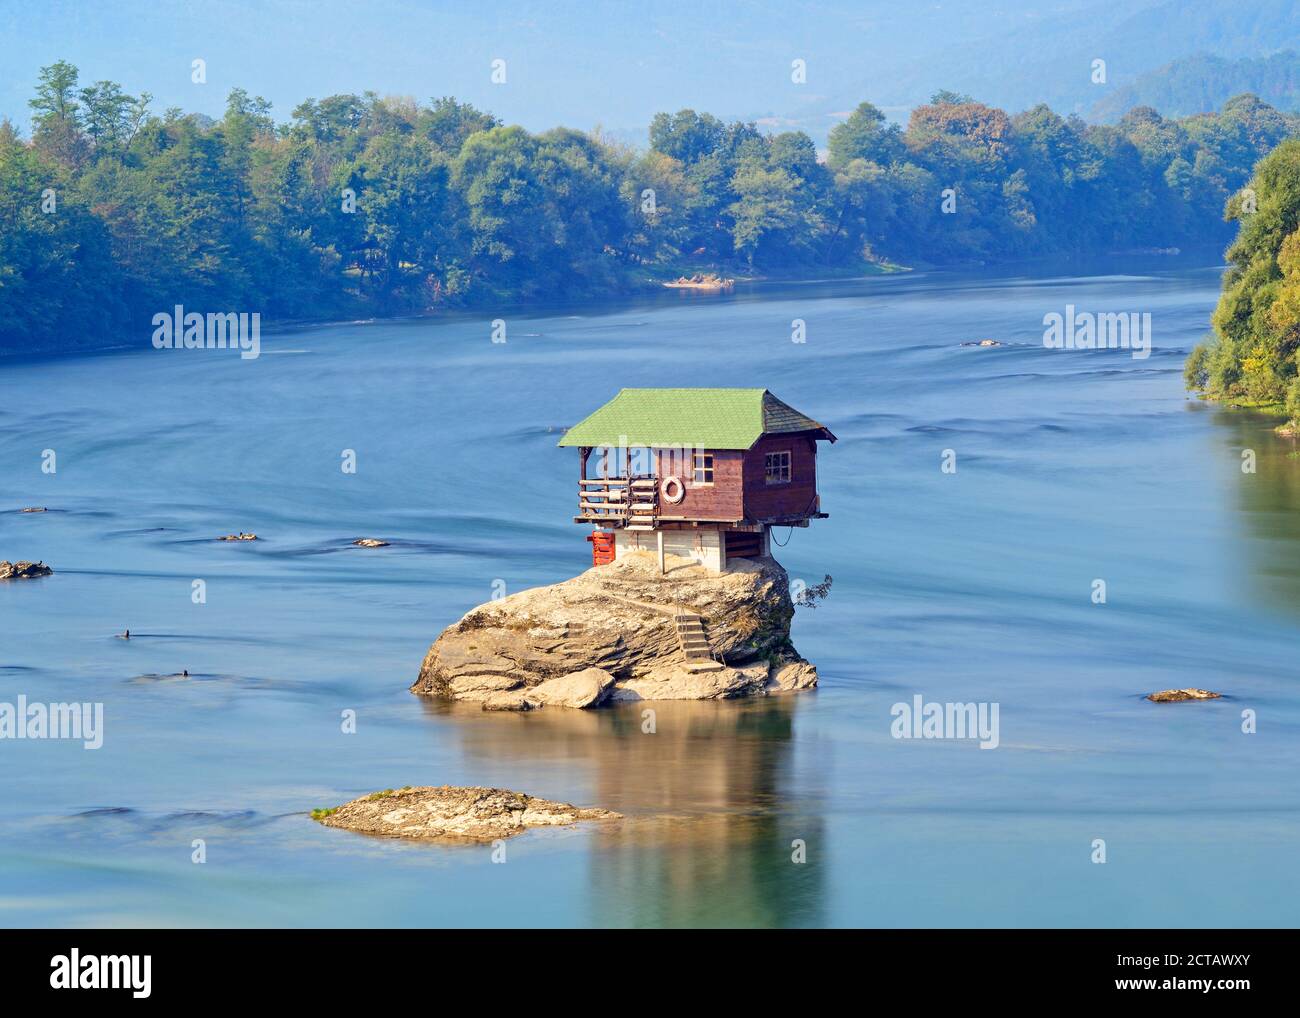 House on the River Drina, Bajina Basta, Serbia Stock Photo